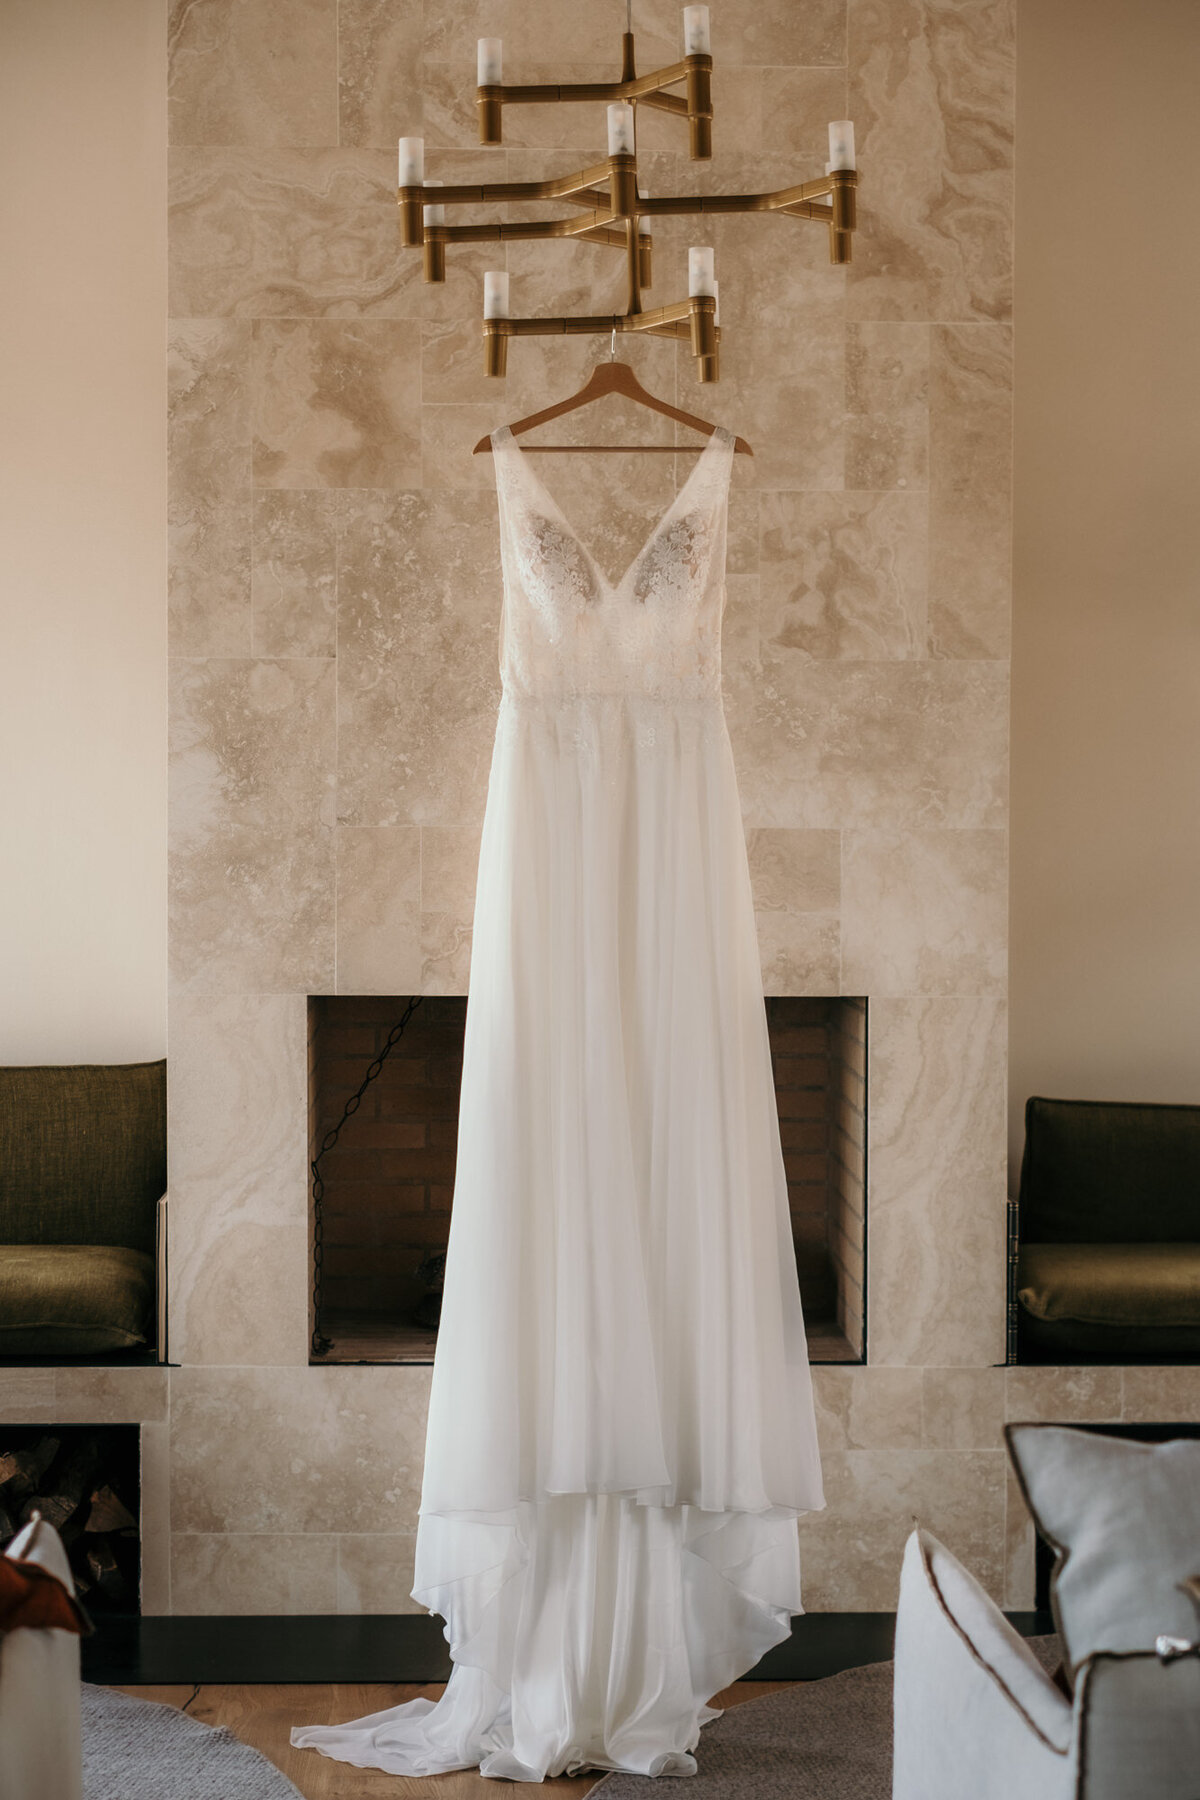 Das Brautkleid hängt an einem modernen Kronleuchter am Kleiderbügel bereit.